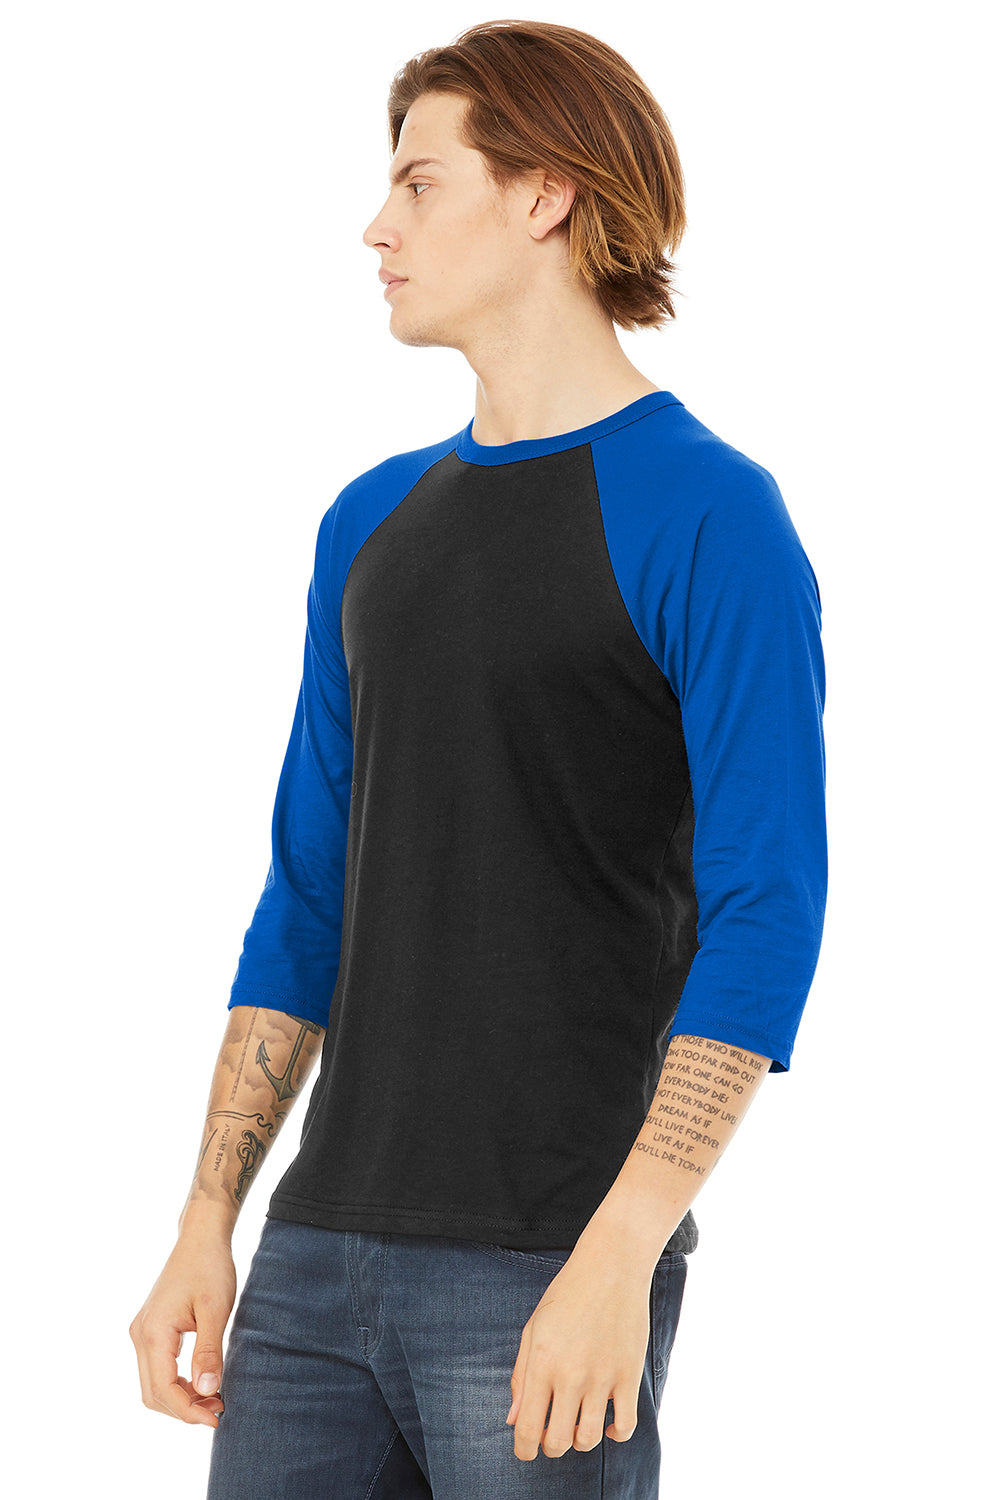 Bella + Canvas BC3200/3200 Mens 3/4 Sleeve Crewneck T-Shirt Black/Royal Blue Model 3Q